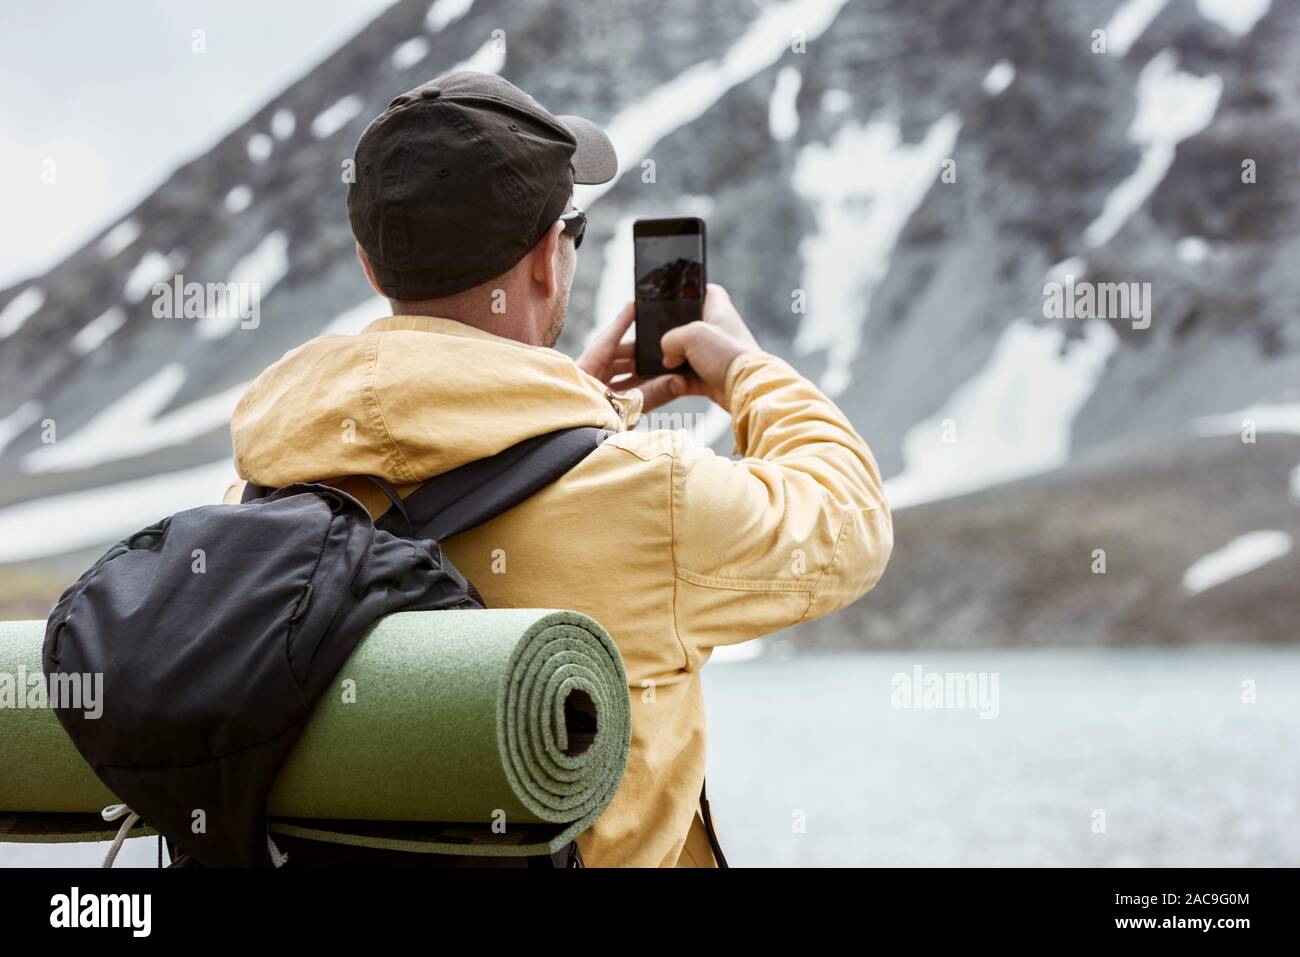 Männliche Wanderer nimmt mobile Photo von Bergsee. Reise Fotografie Konzept Stockfoto